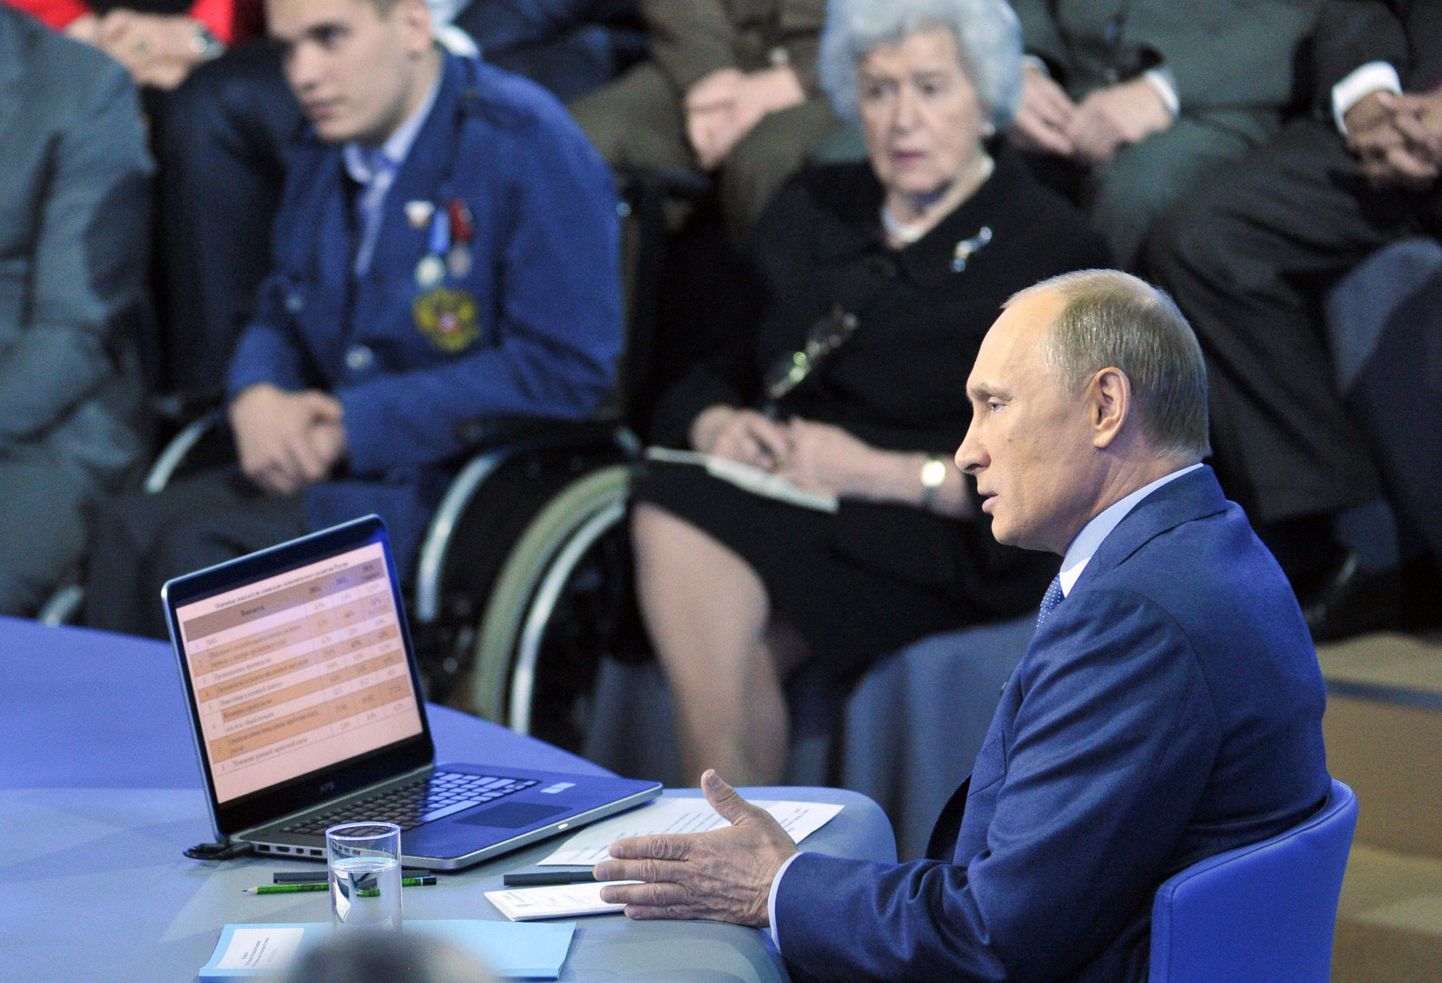 Venemaa president Vladimir Putin tänase otseliini küsimustele vastamas.